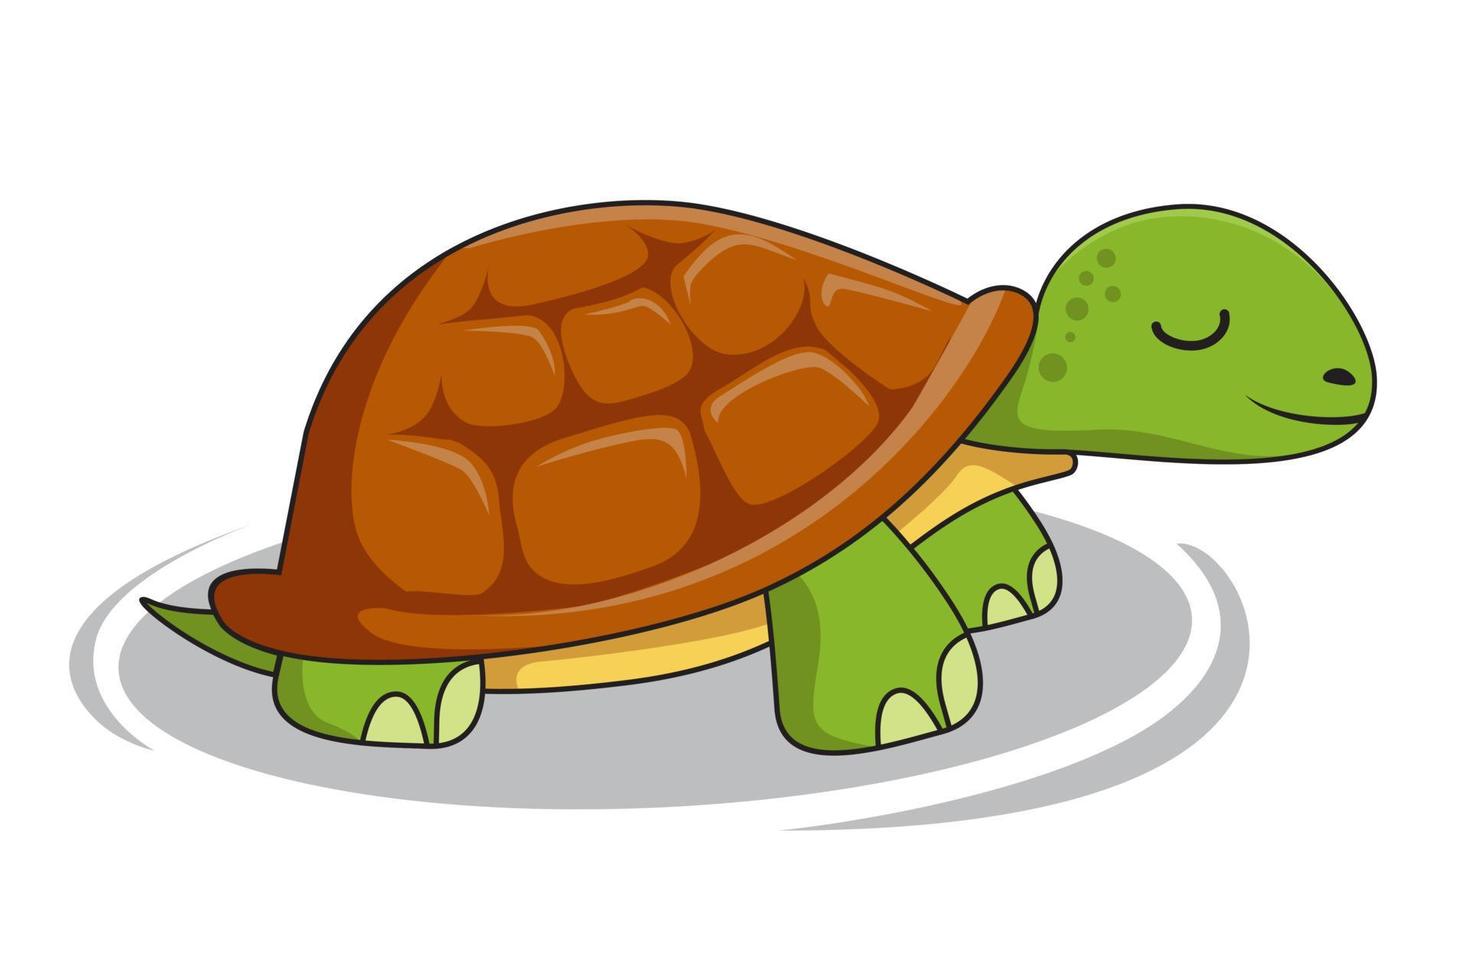 illustrazioni di tartarughe dei cartoni animati di tartaruga vettore